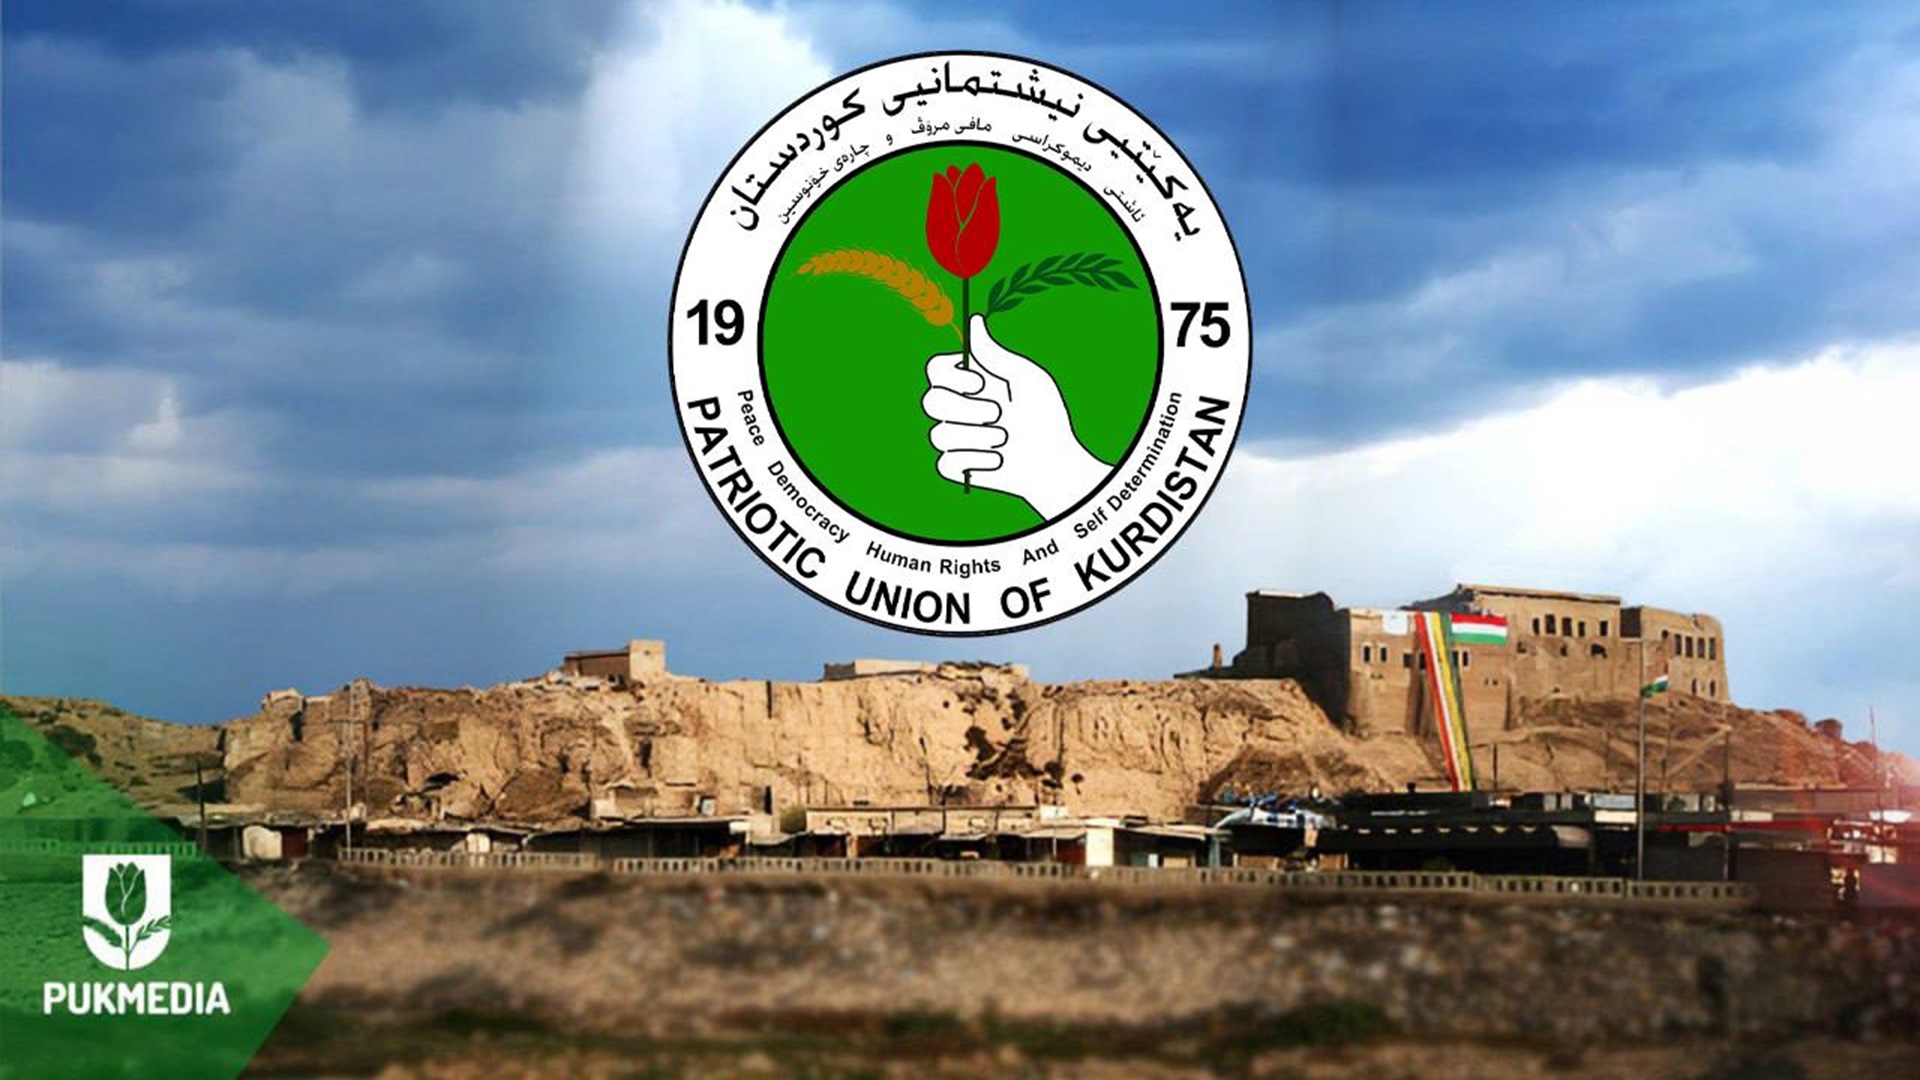 الاتحاد الوطني الفائز الأول في انتخابات مجلس محافظة كركوك بخمسة مقاعد